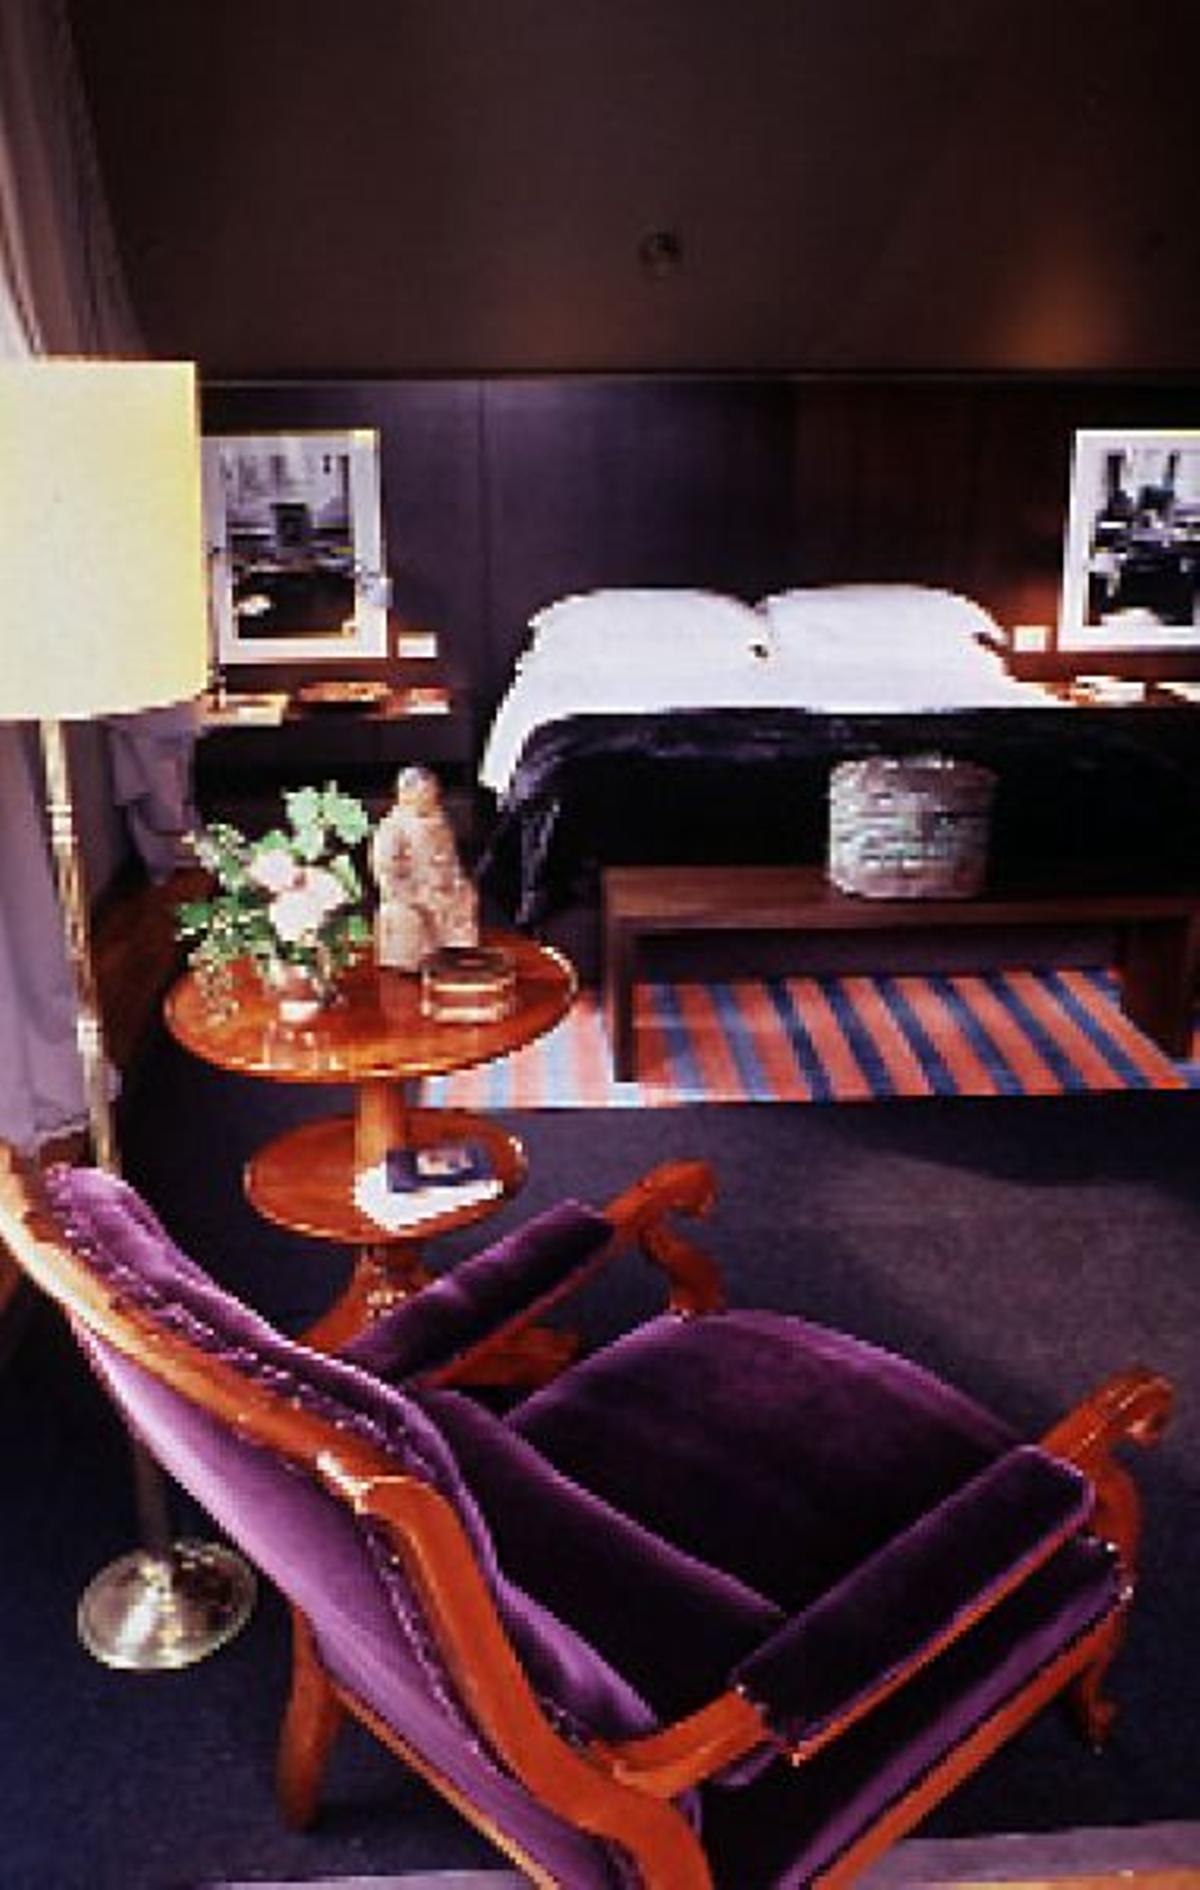 Sueña en MilánLa suite Brioni, en el último piso del hotel Four Seasons, de Milán, es un oasis